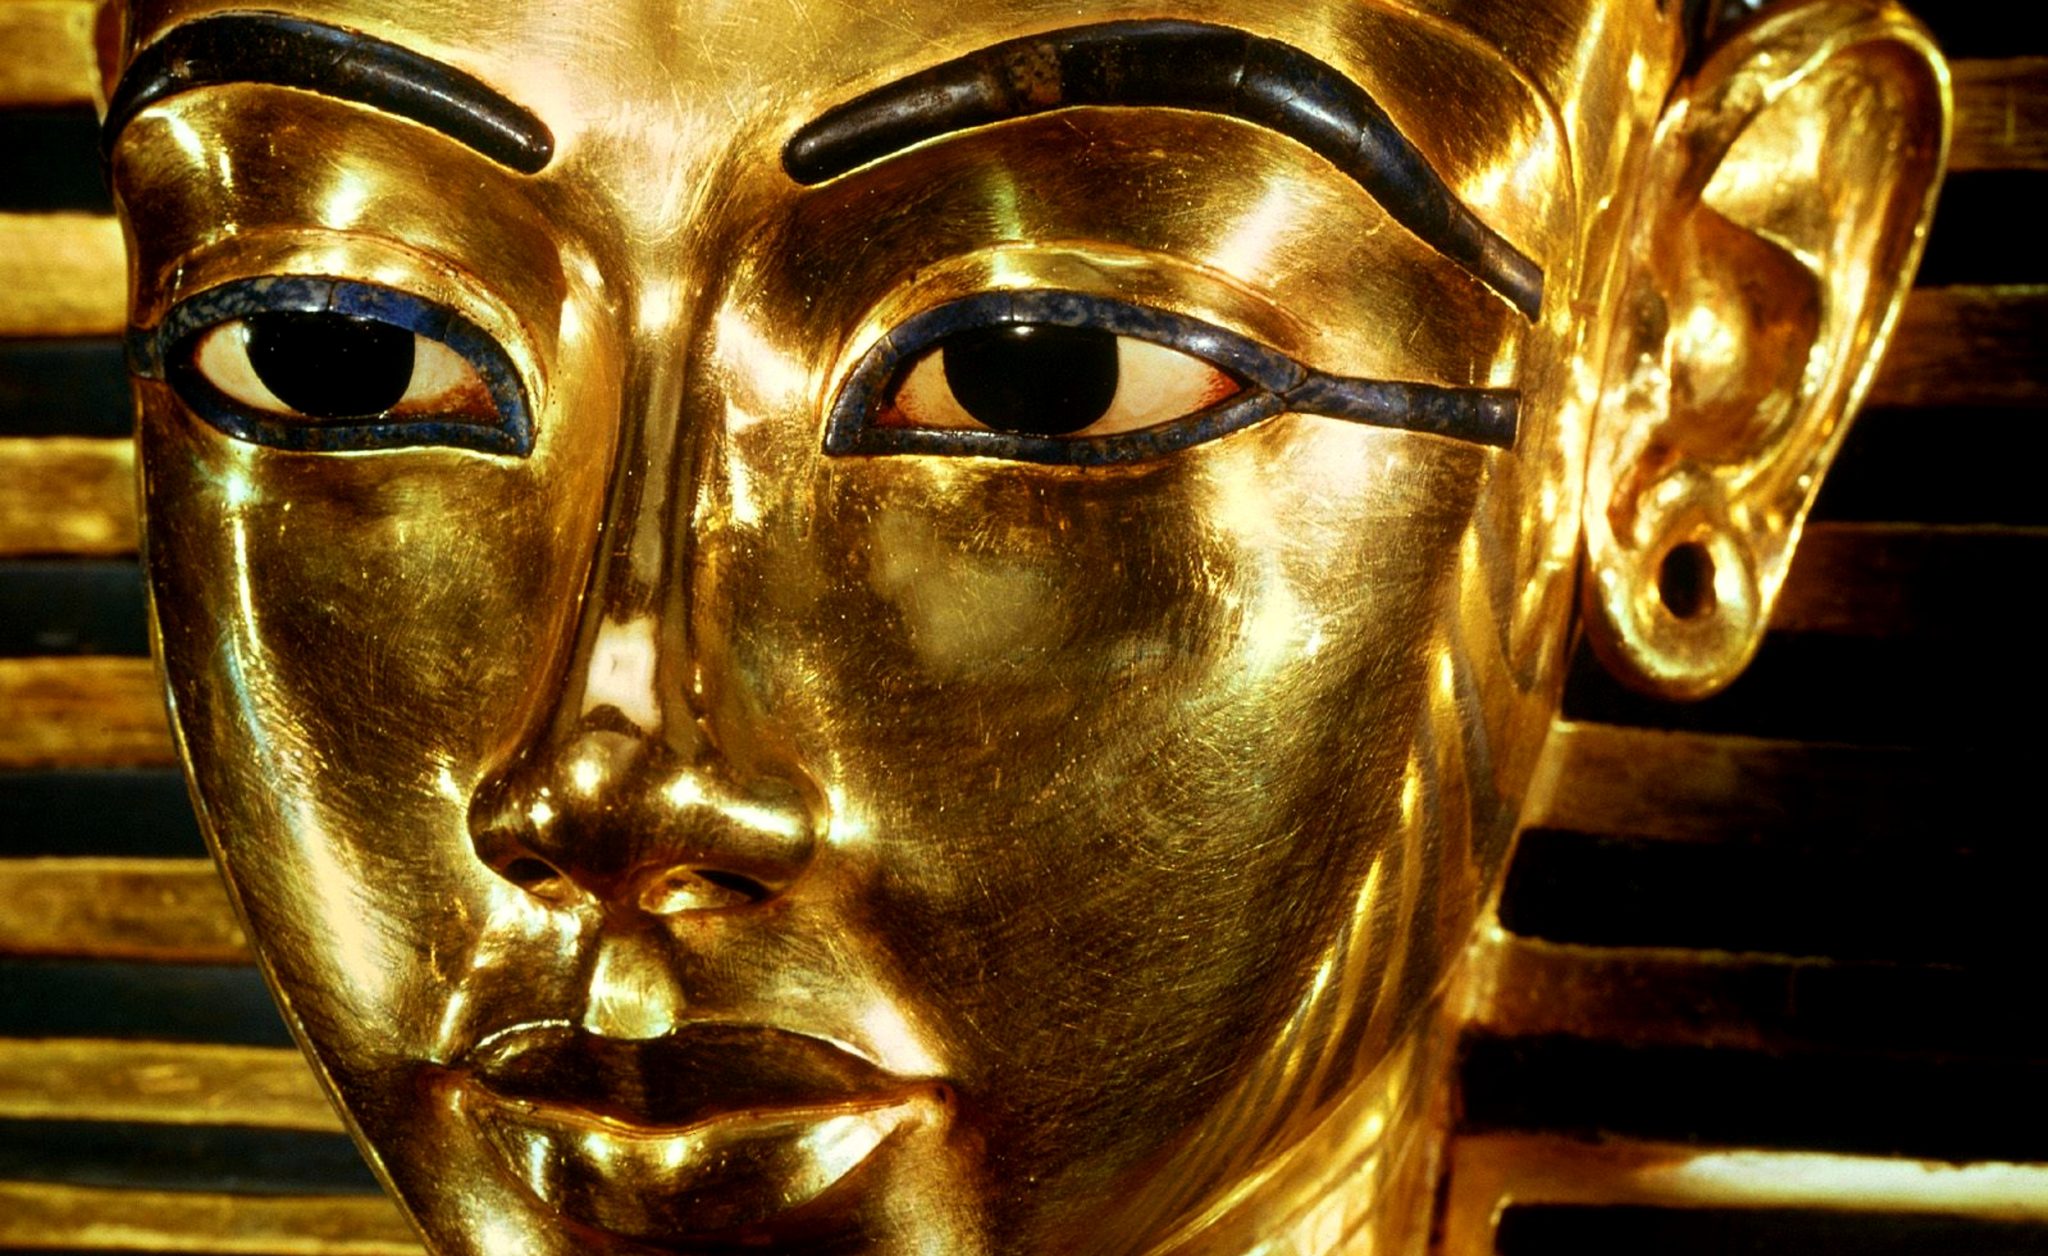 Nuova luce su Tutankhamon. L’Egitto avvia il restauro del celebre sarcofago dorato del faraone